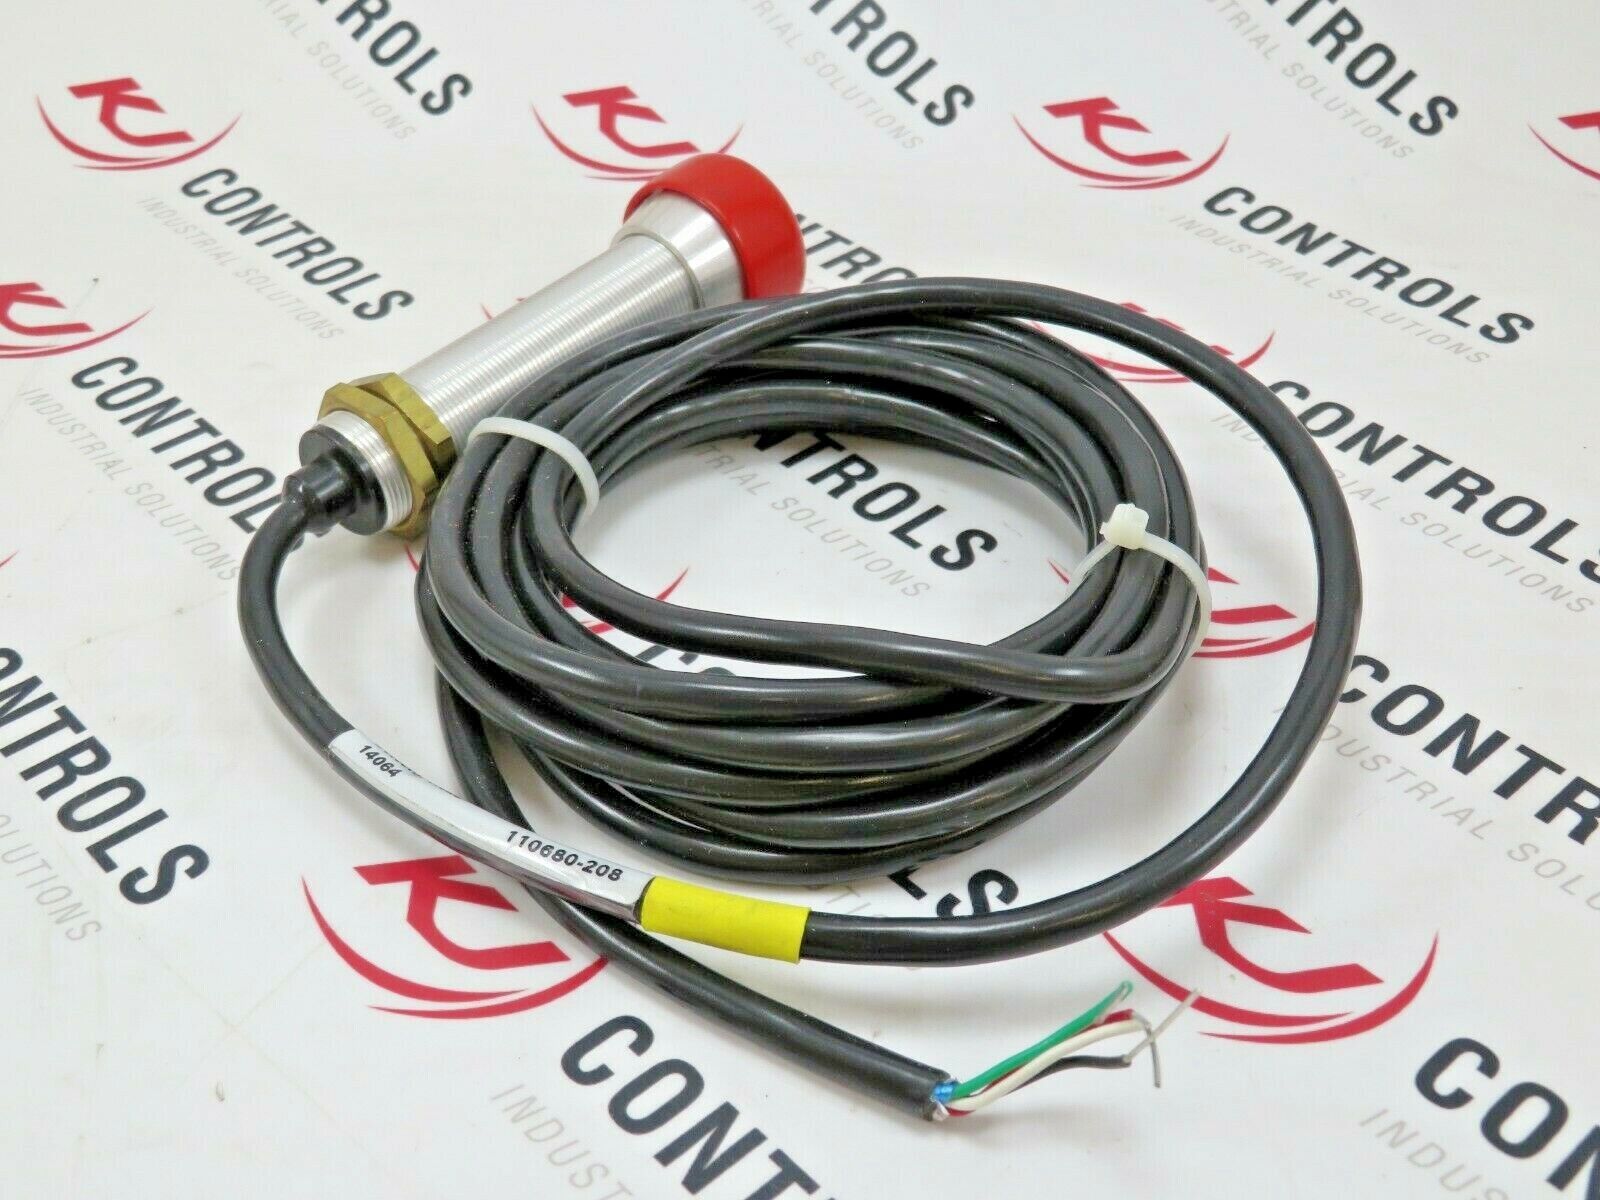 Eaton 1265A-202 Photoelectric Sensor Head 12VDC 9FT Cable